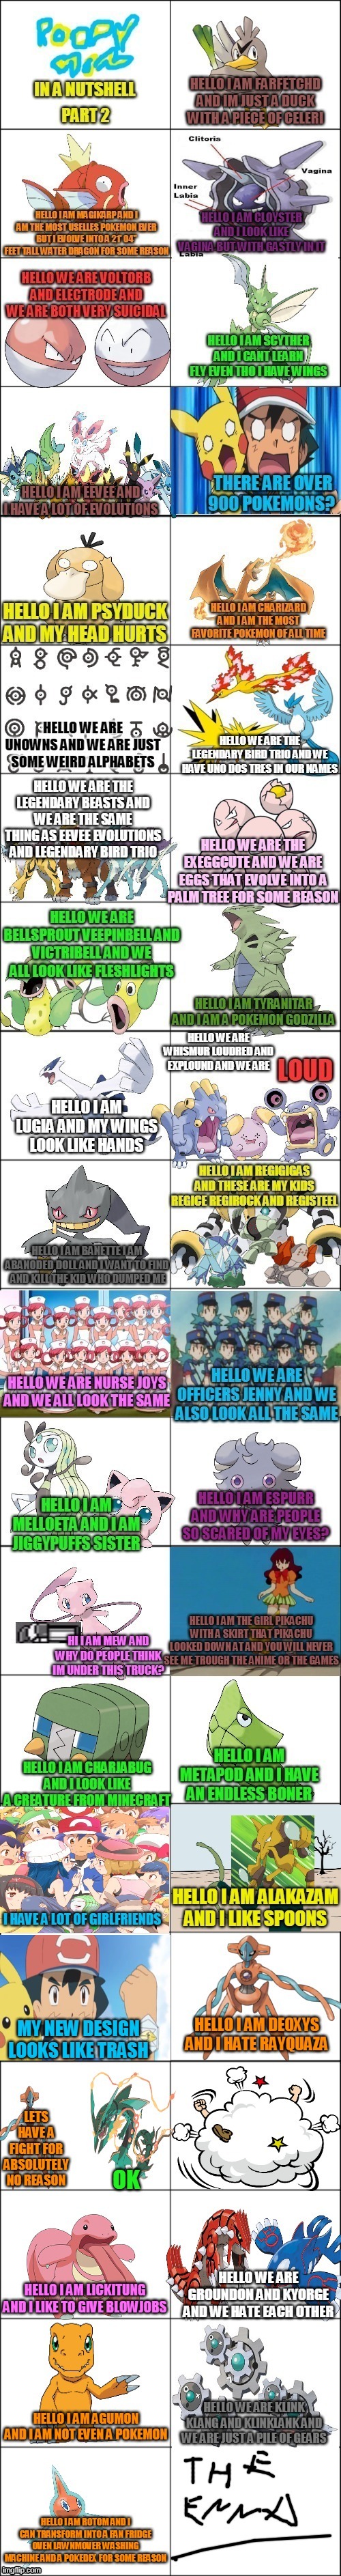 pokemon  in a nutshell | image tagged in memes,funny,pokemon,in a nutshell,nutshell | made w/ Imgflip meme maker